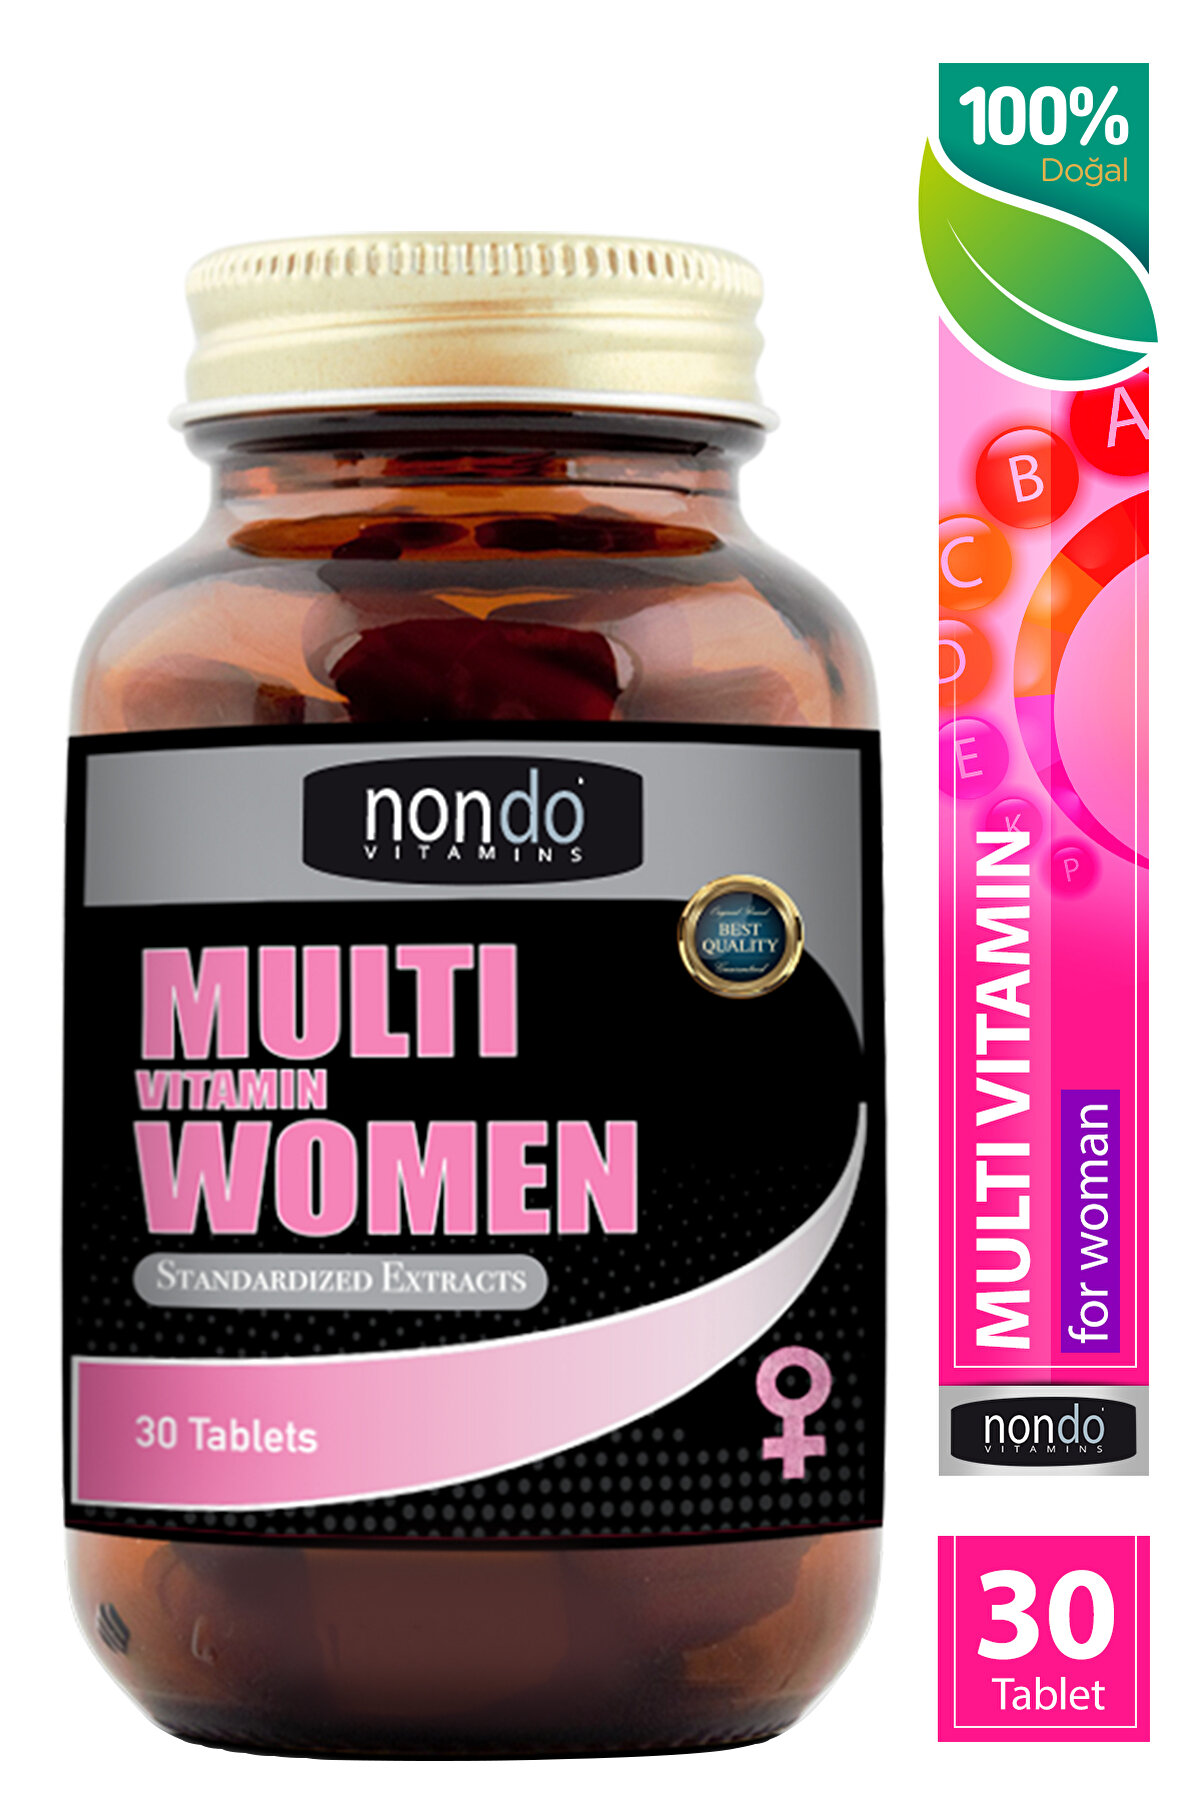 Nondo Multı Vıtamın Women 30 Tablet